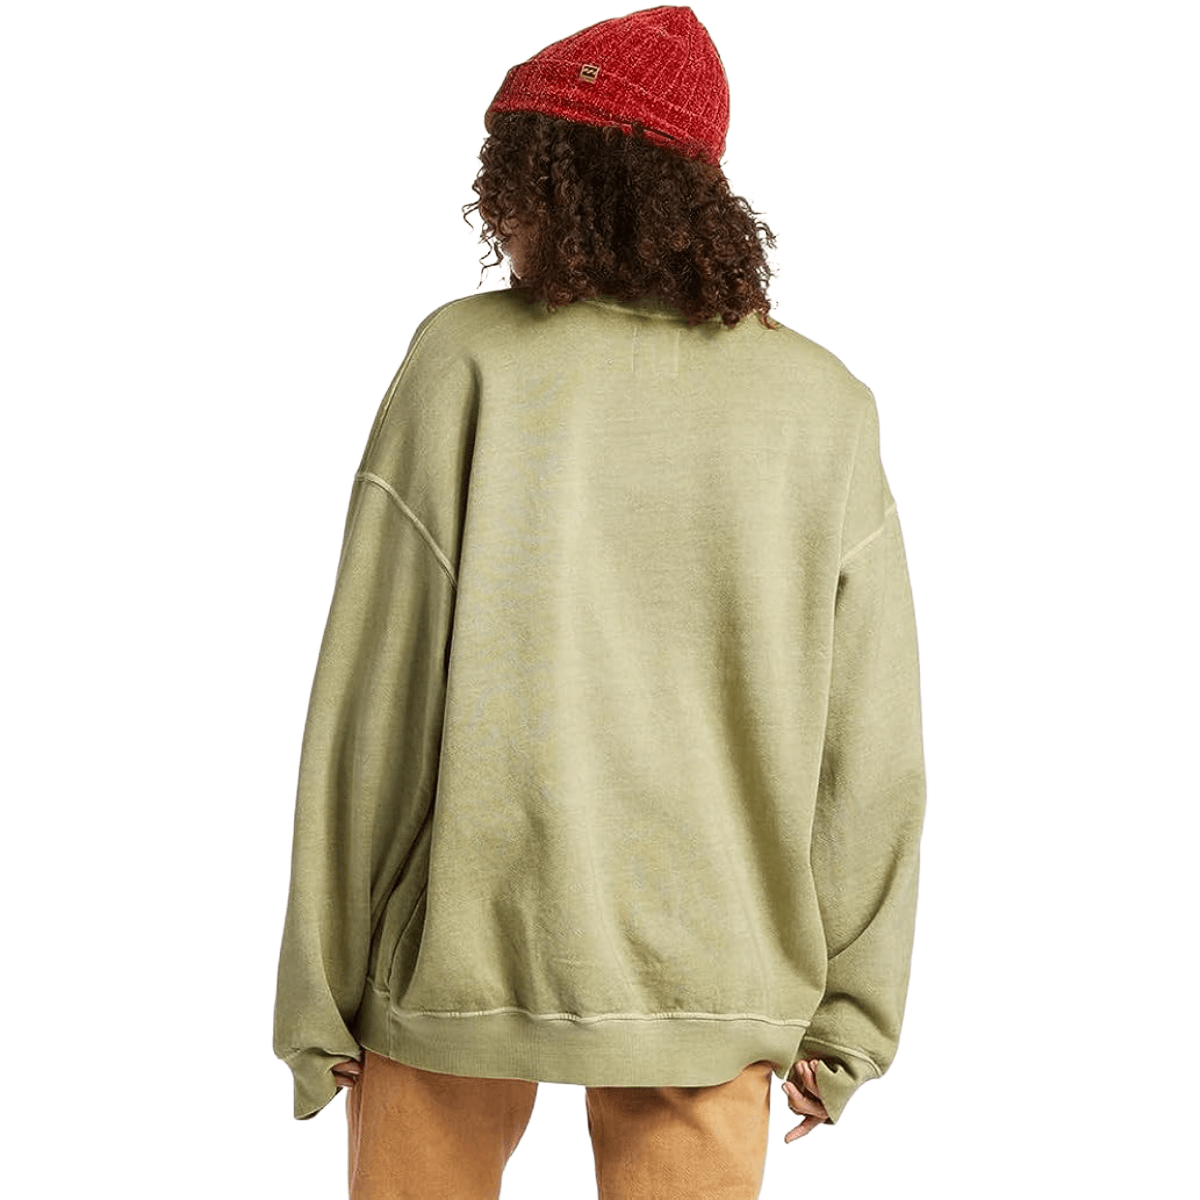 Ride In - Oversized Sweatshirt for Women